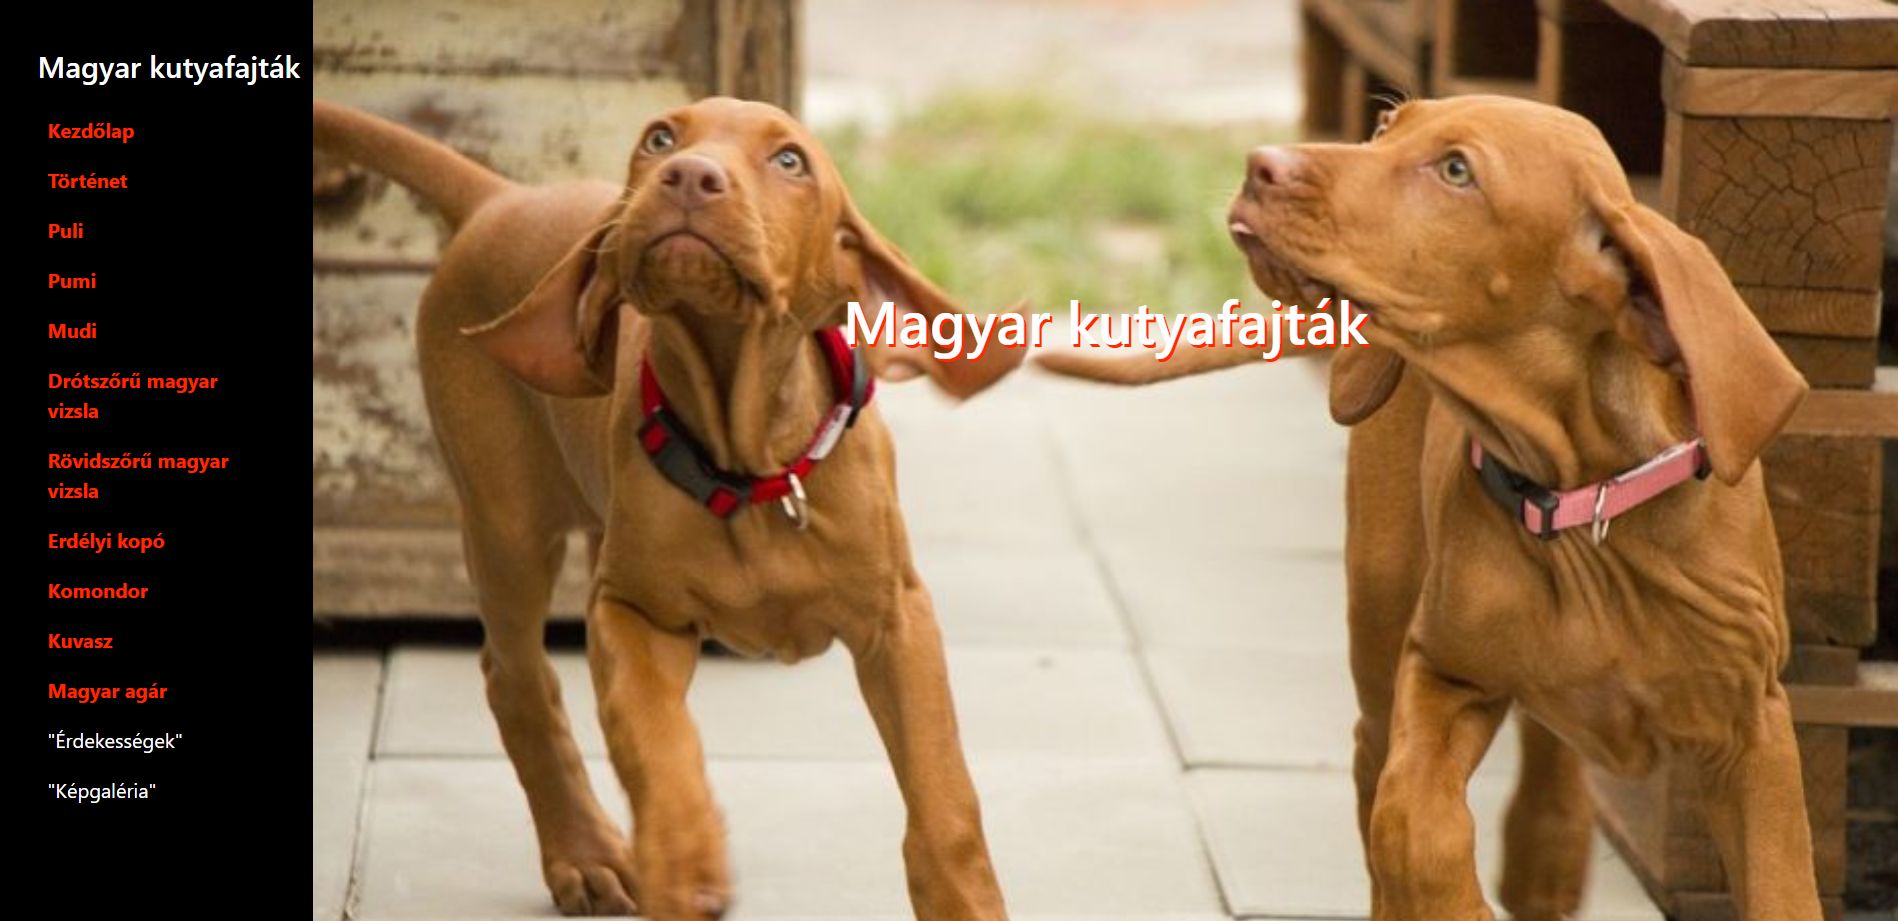 Magyar kutyafajták feladat